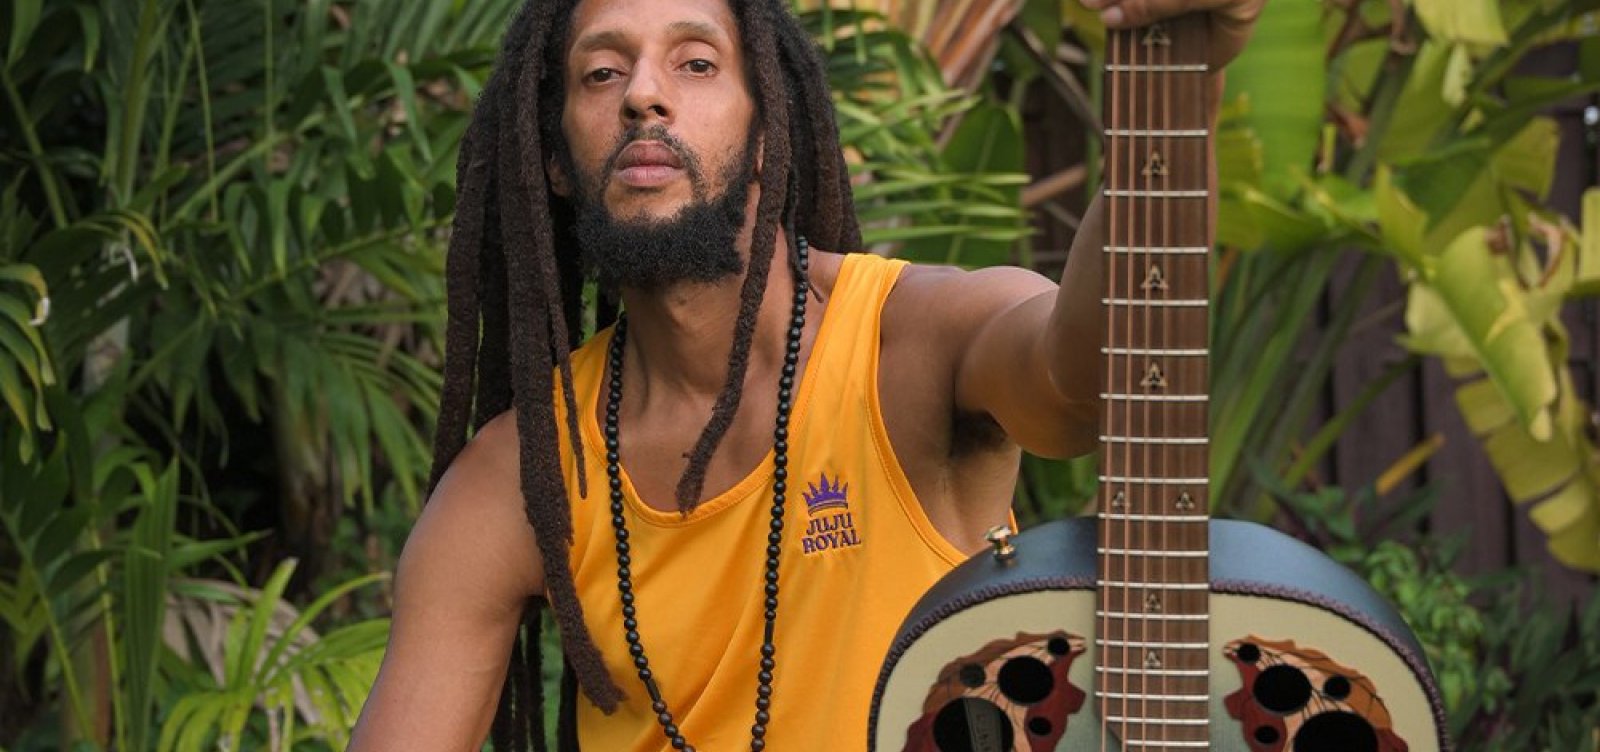 Julian Marley, filho de Bob Marley, se apresenta pela primeira vez em Salvador 